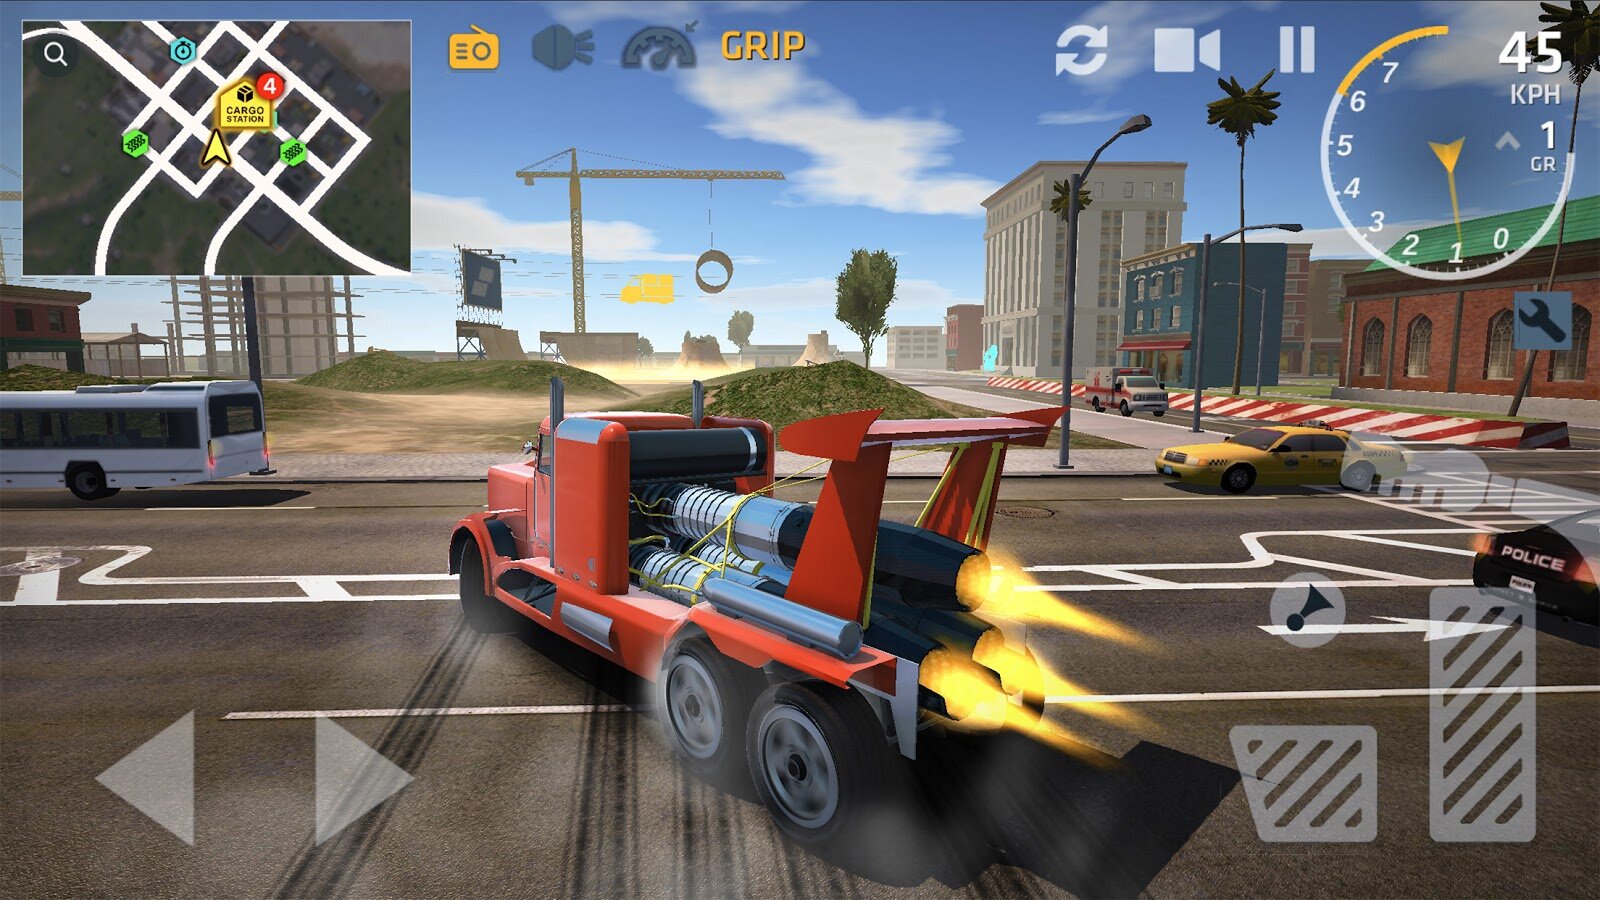 Ultimate Truck Simulator 1.3.1